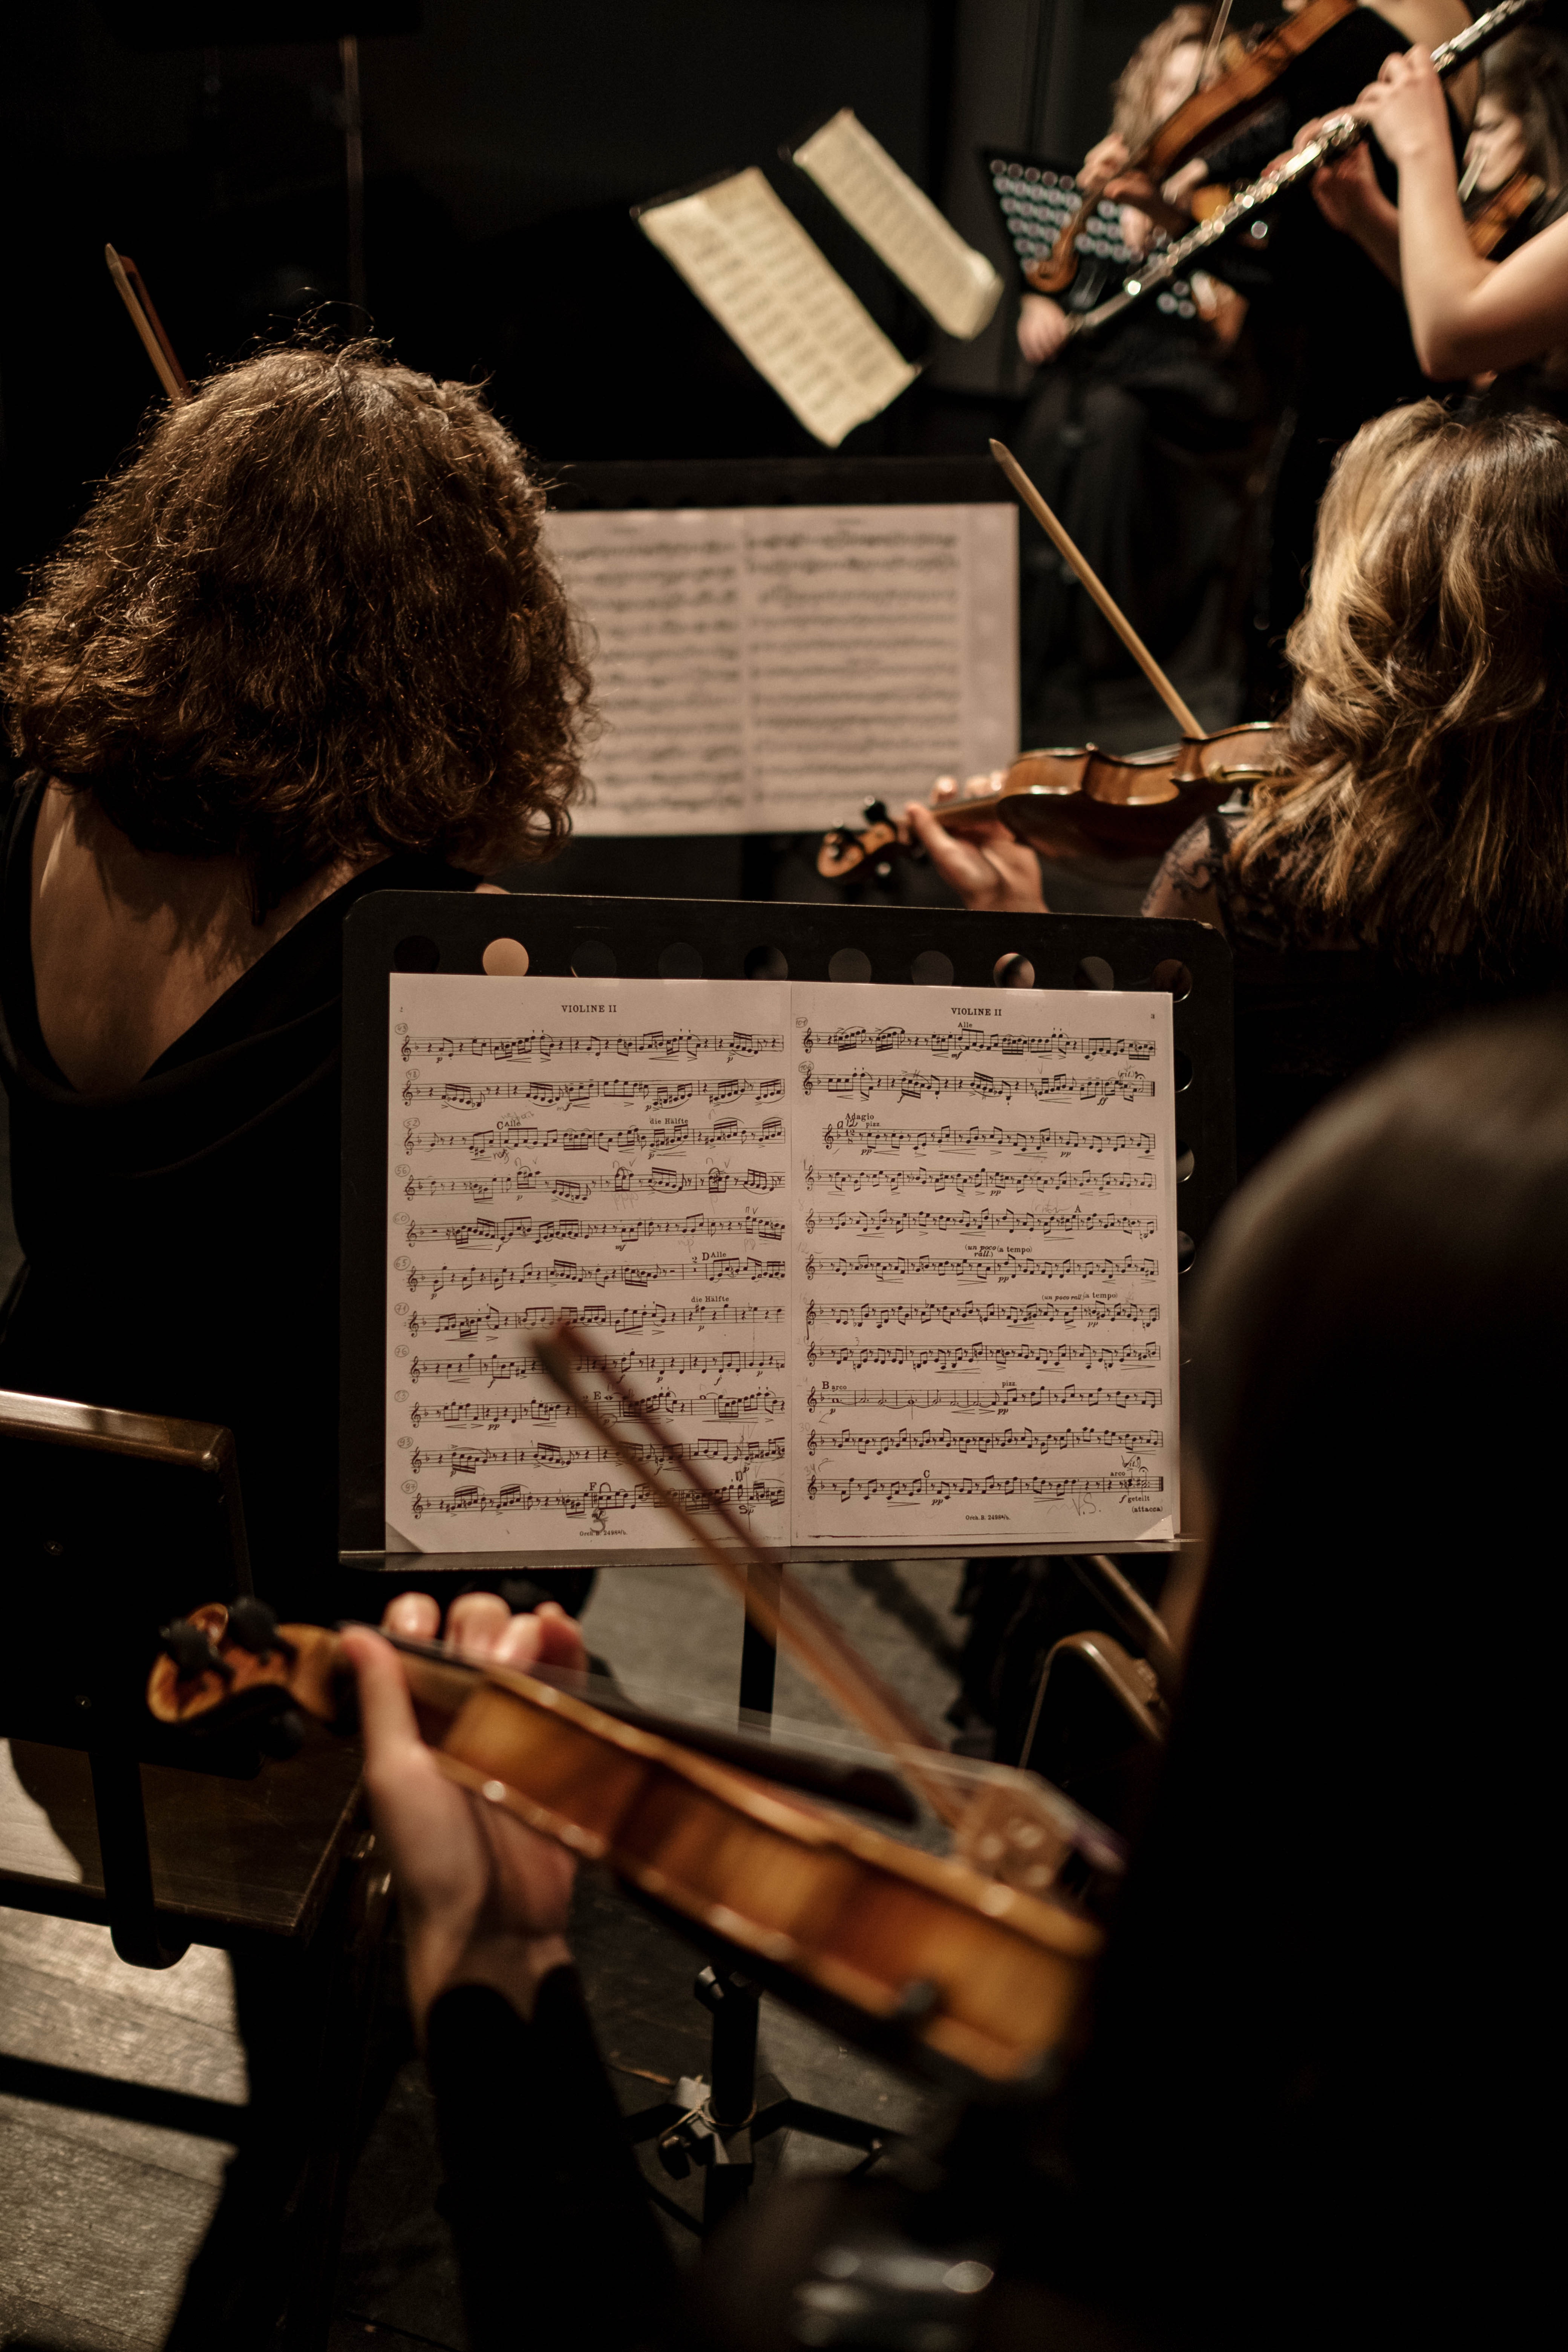 Músics tocant en una orquestra. Font: Pexels - cottonbro studio